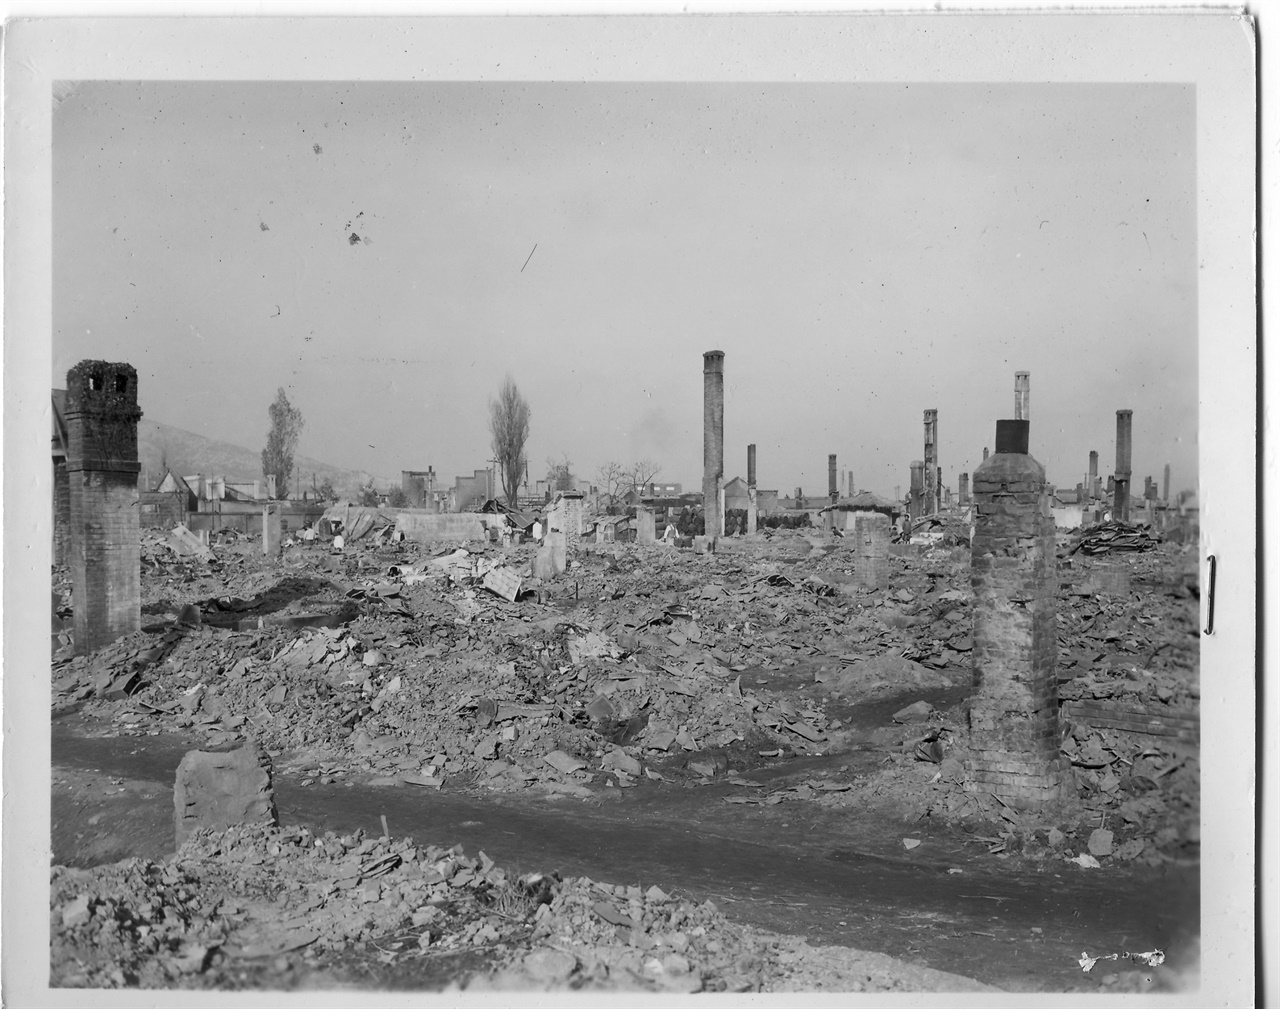 1950. 11. 20 원산, 미 공군의 폭격으로 도시 전체가 파괴되고 건물의 기둥과 굴뚝 일부만 남아 있다.